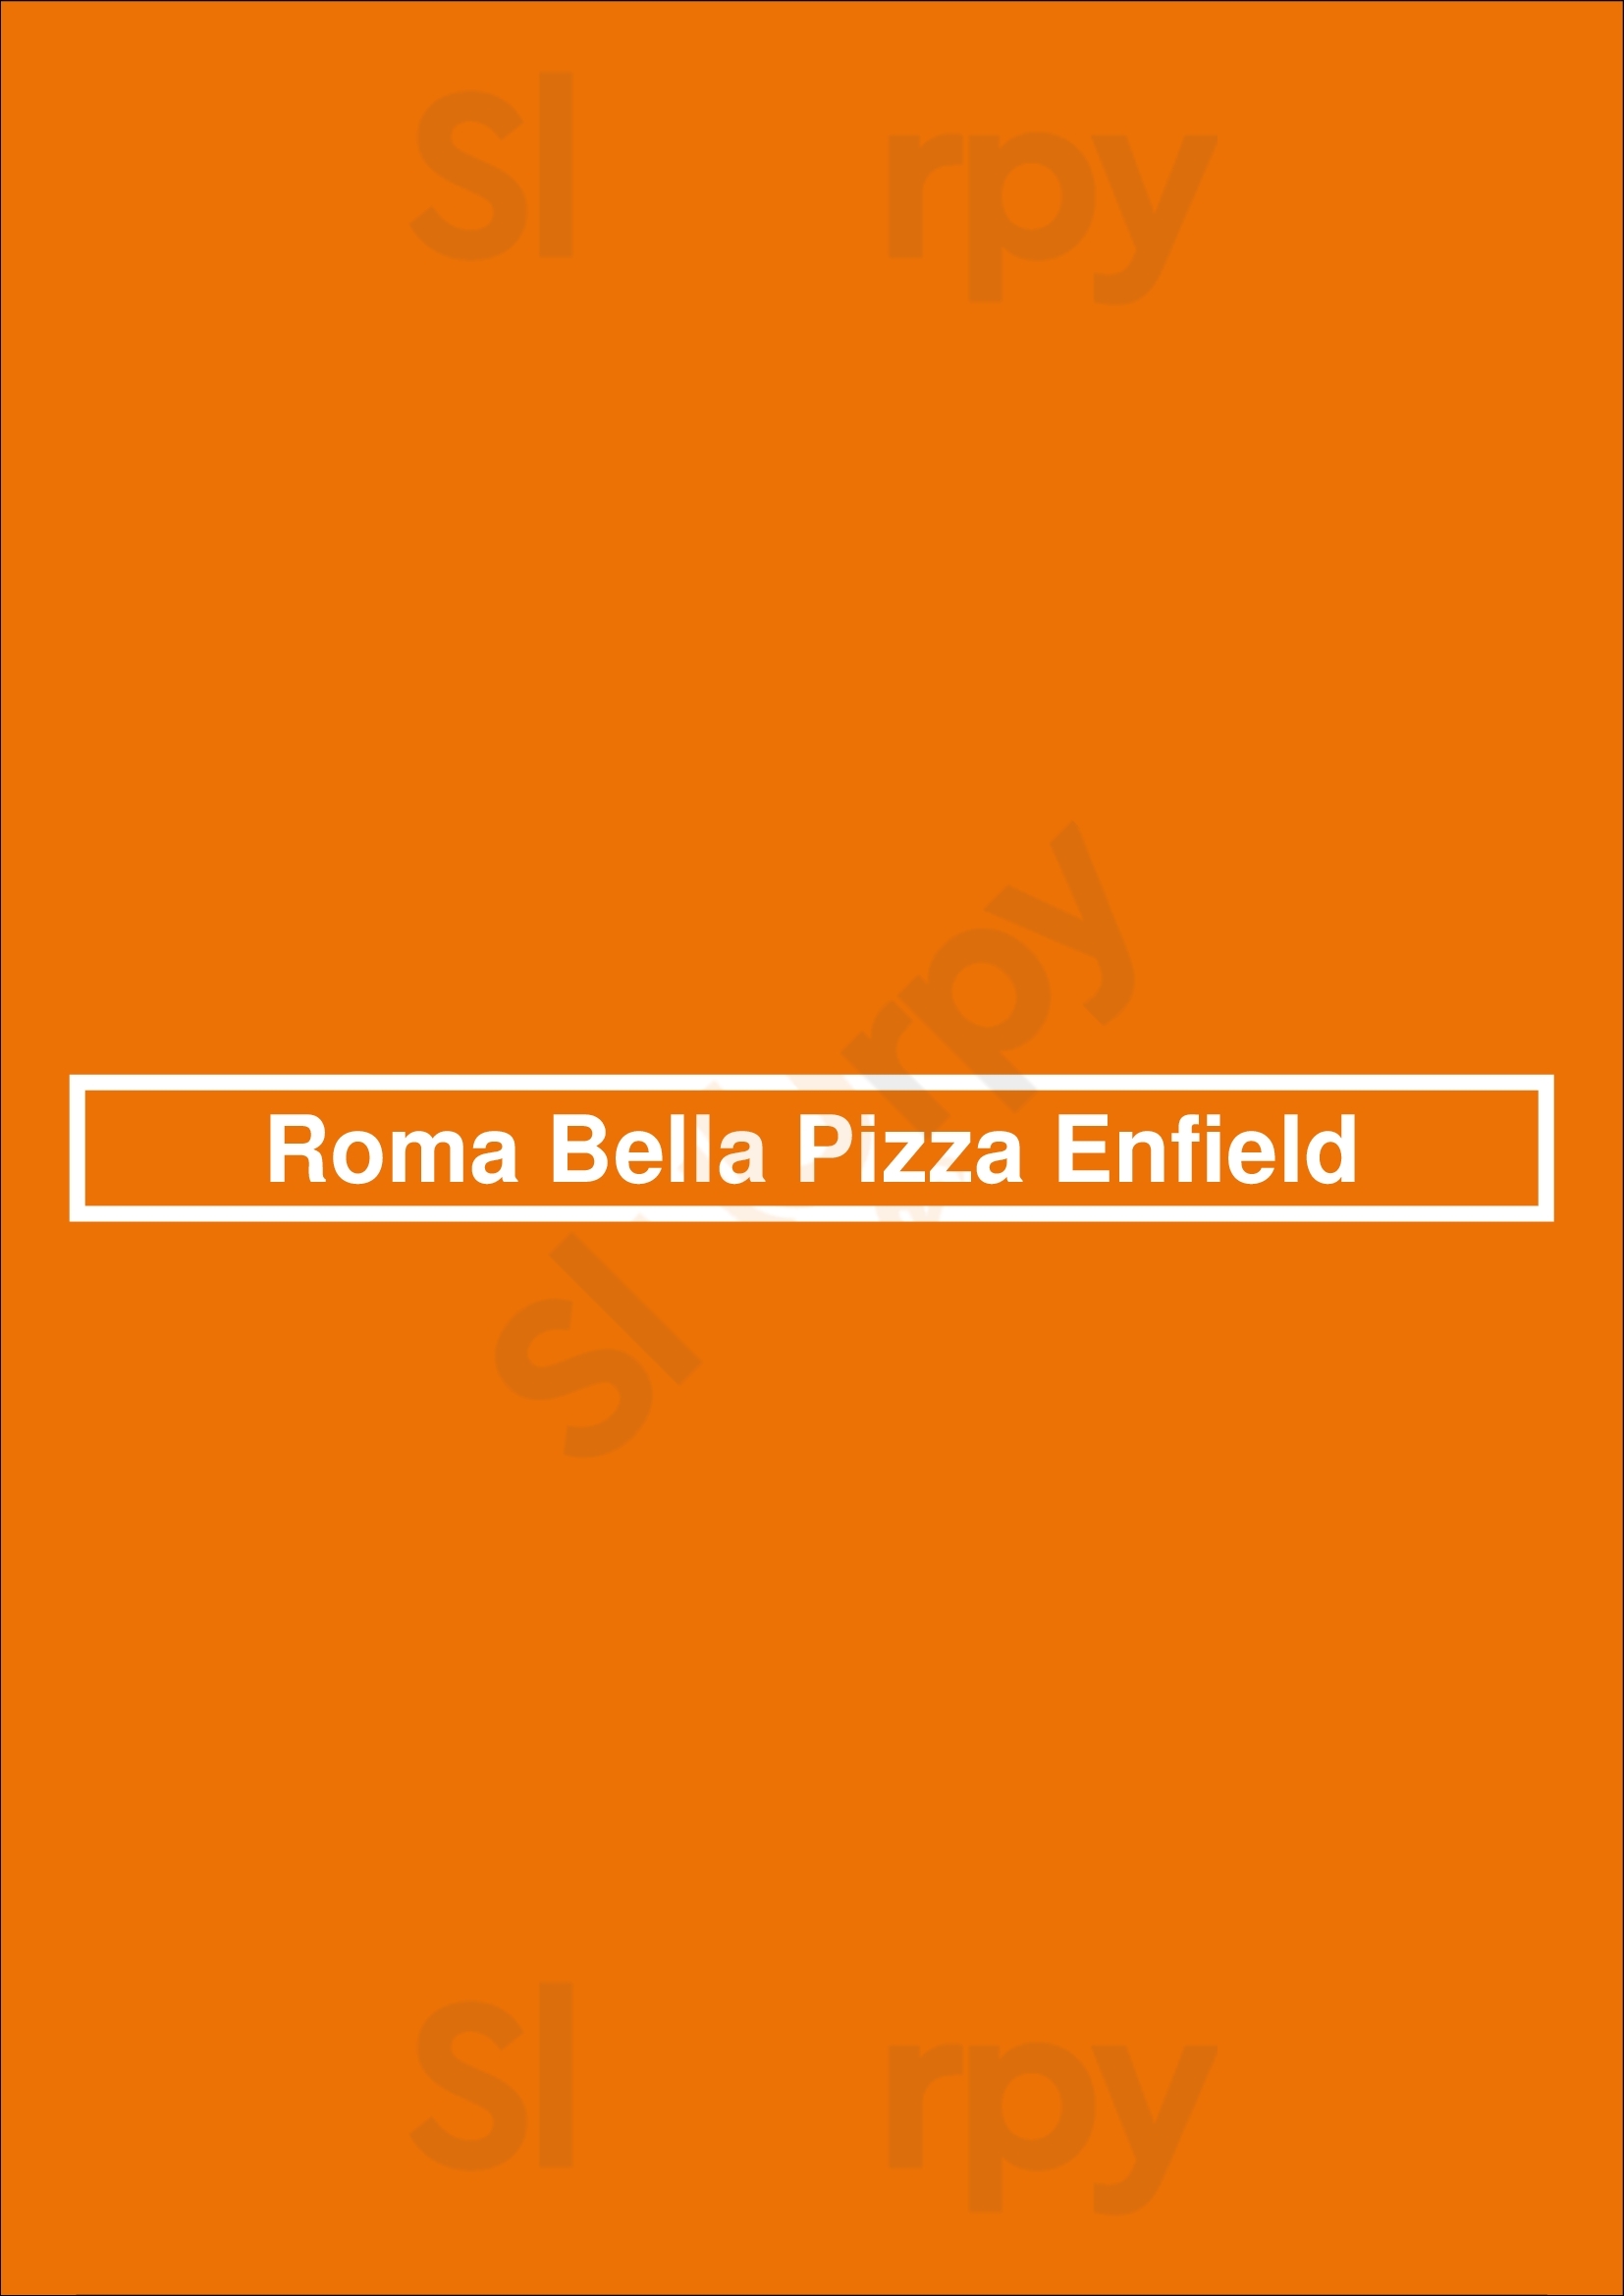 Roma Bella Pizza Enfield Enfield Menu - 1